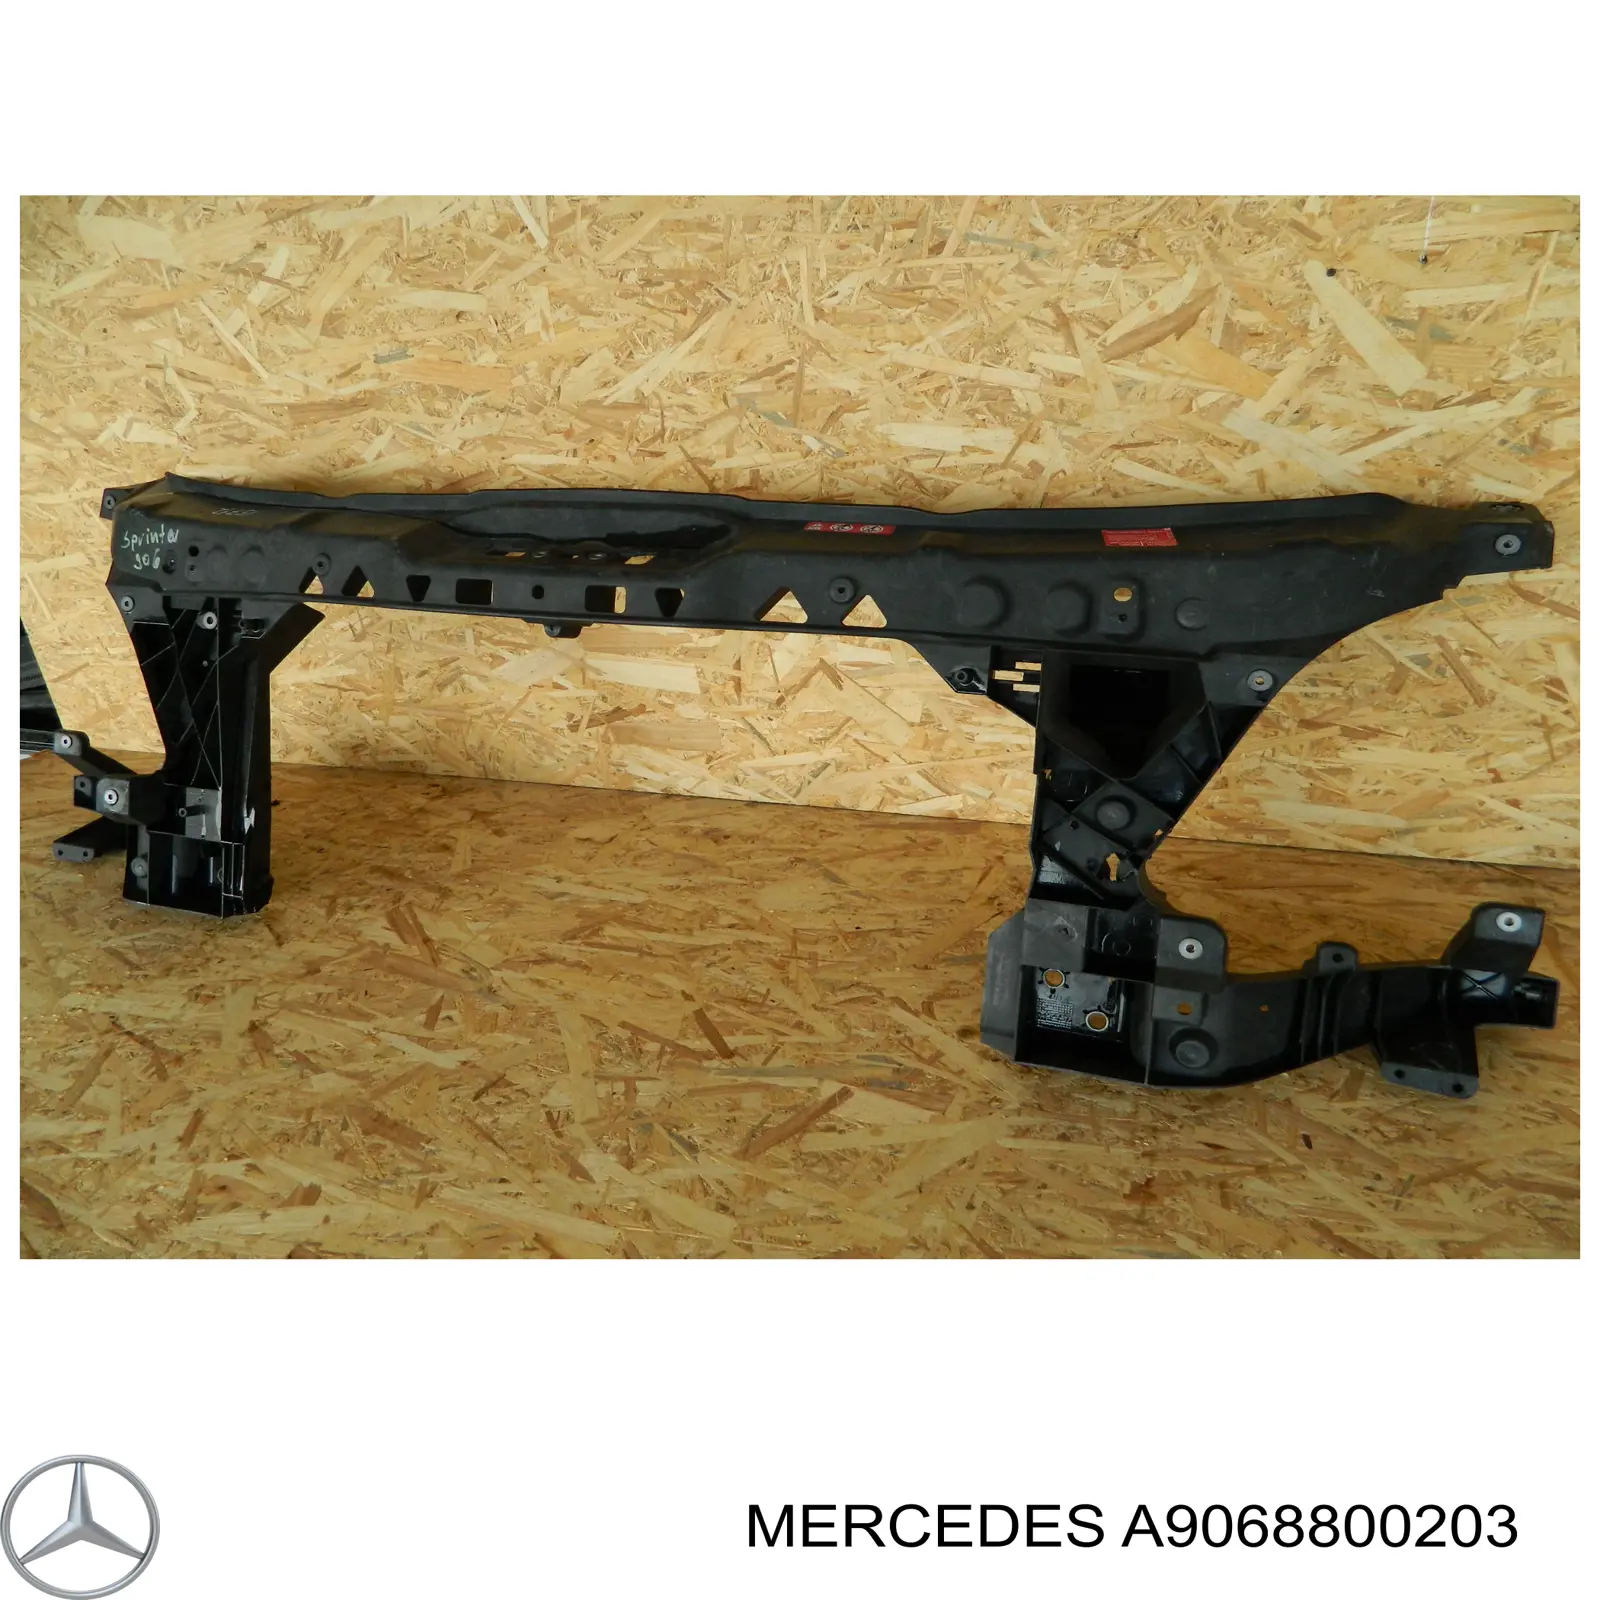 A9068800203 Mercedes суппорт радиатора в сборе (монтажная панель крепления фар)